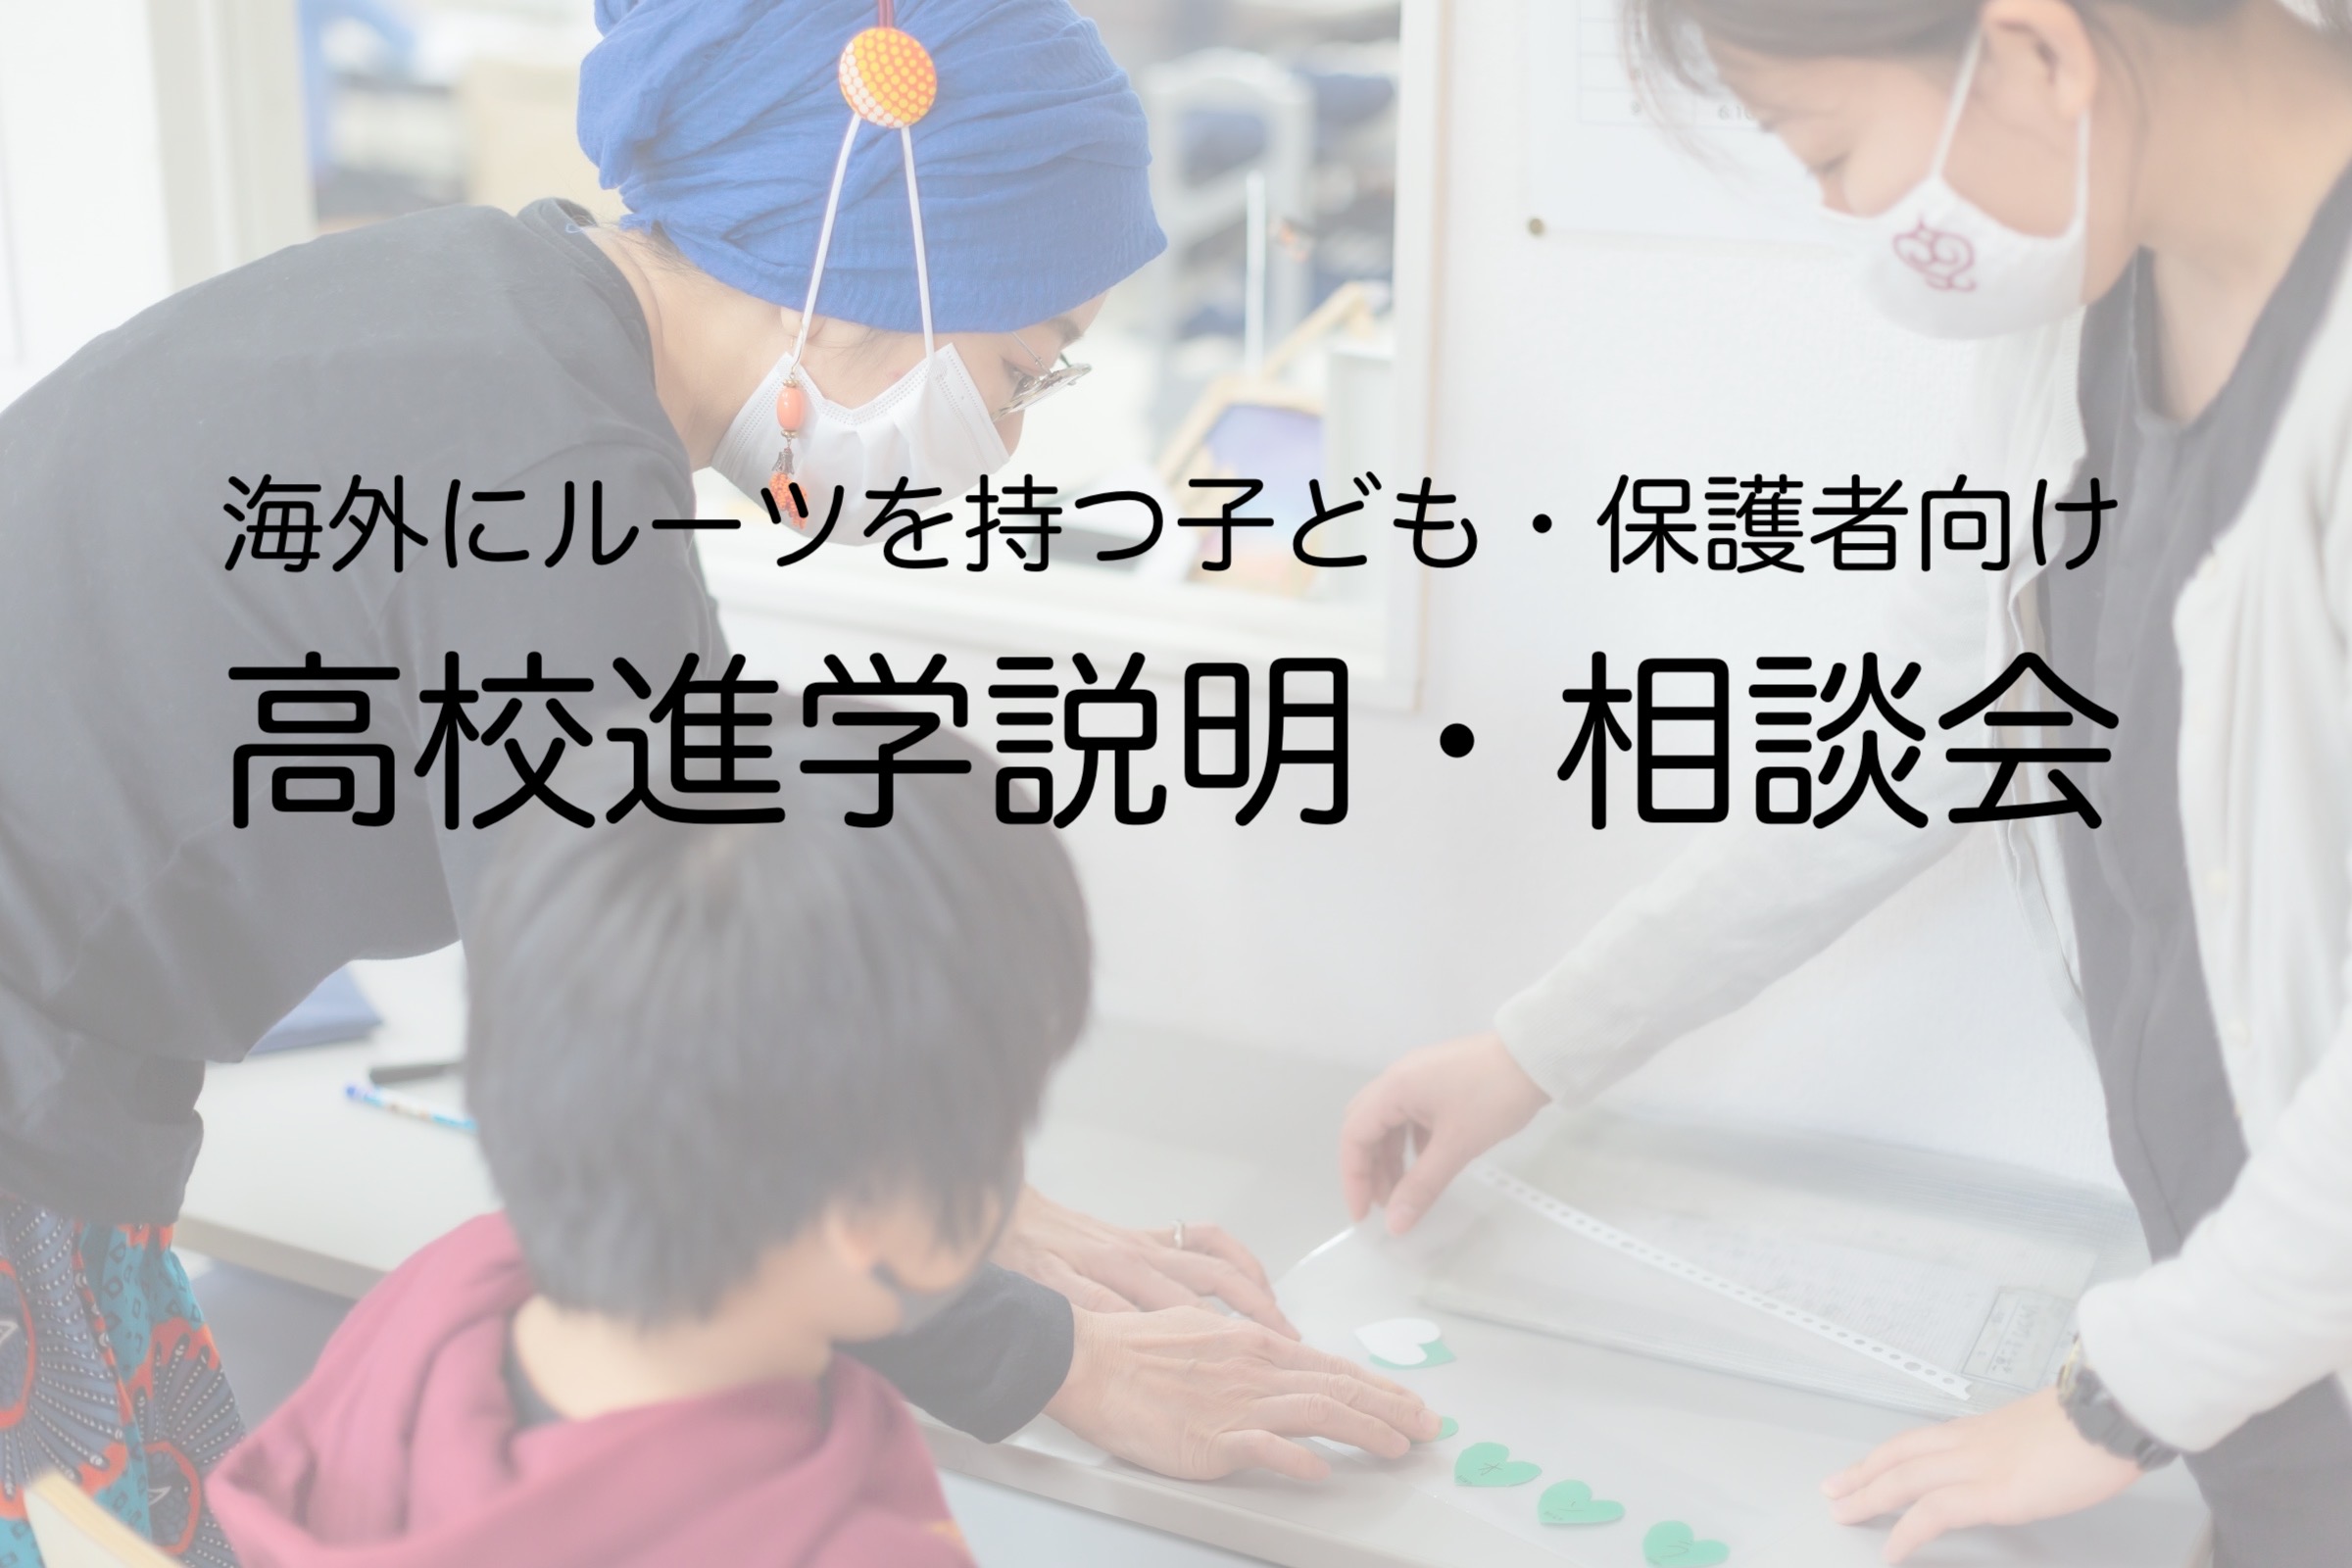 【9月12日開催】東京都内在住の海外にルーツを持つ子ども・保護者向け「高校進学説明・相談会」